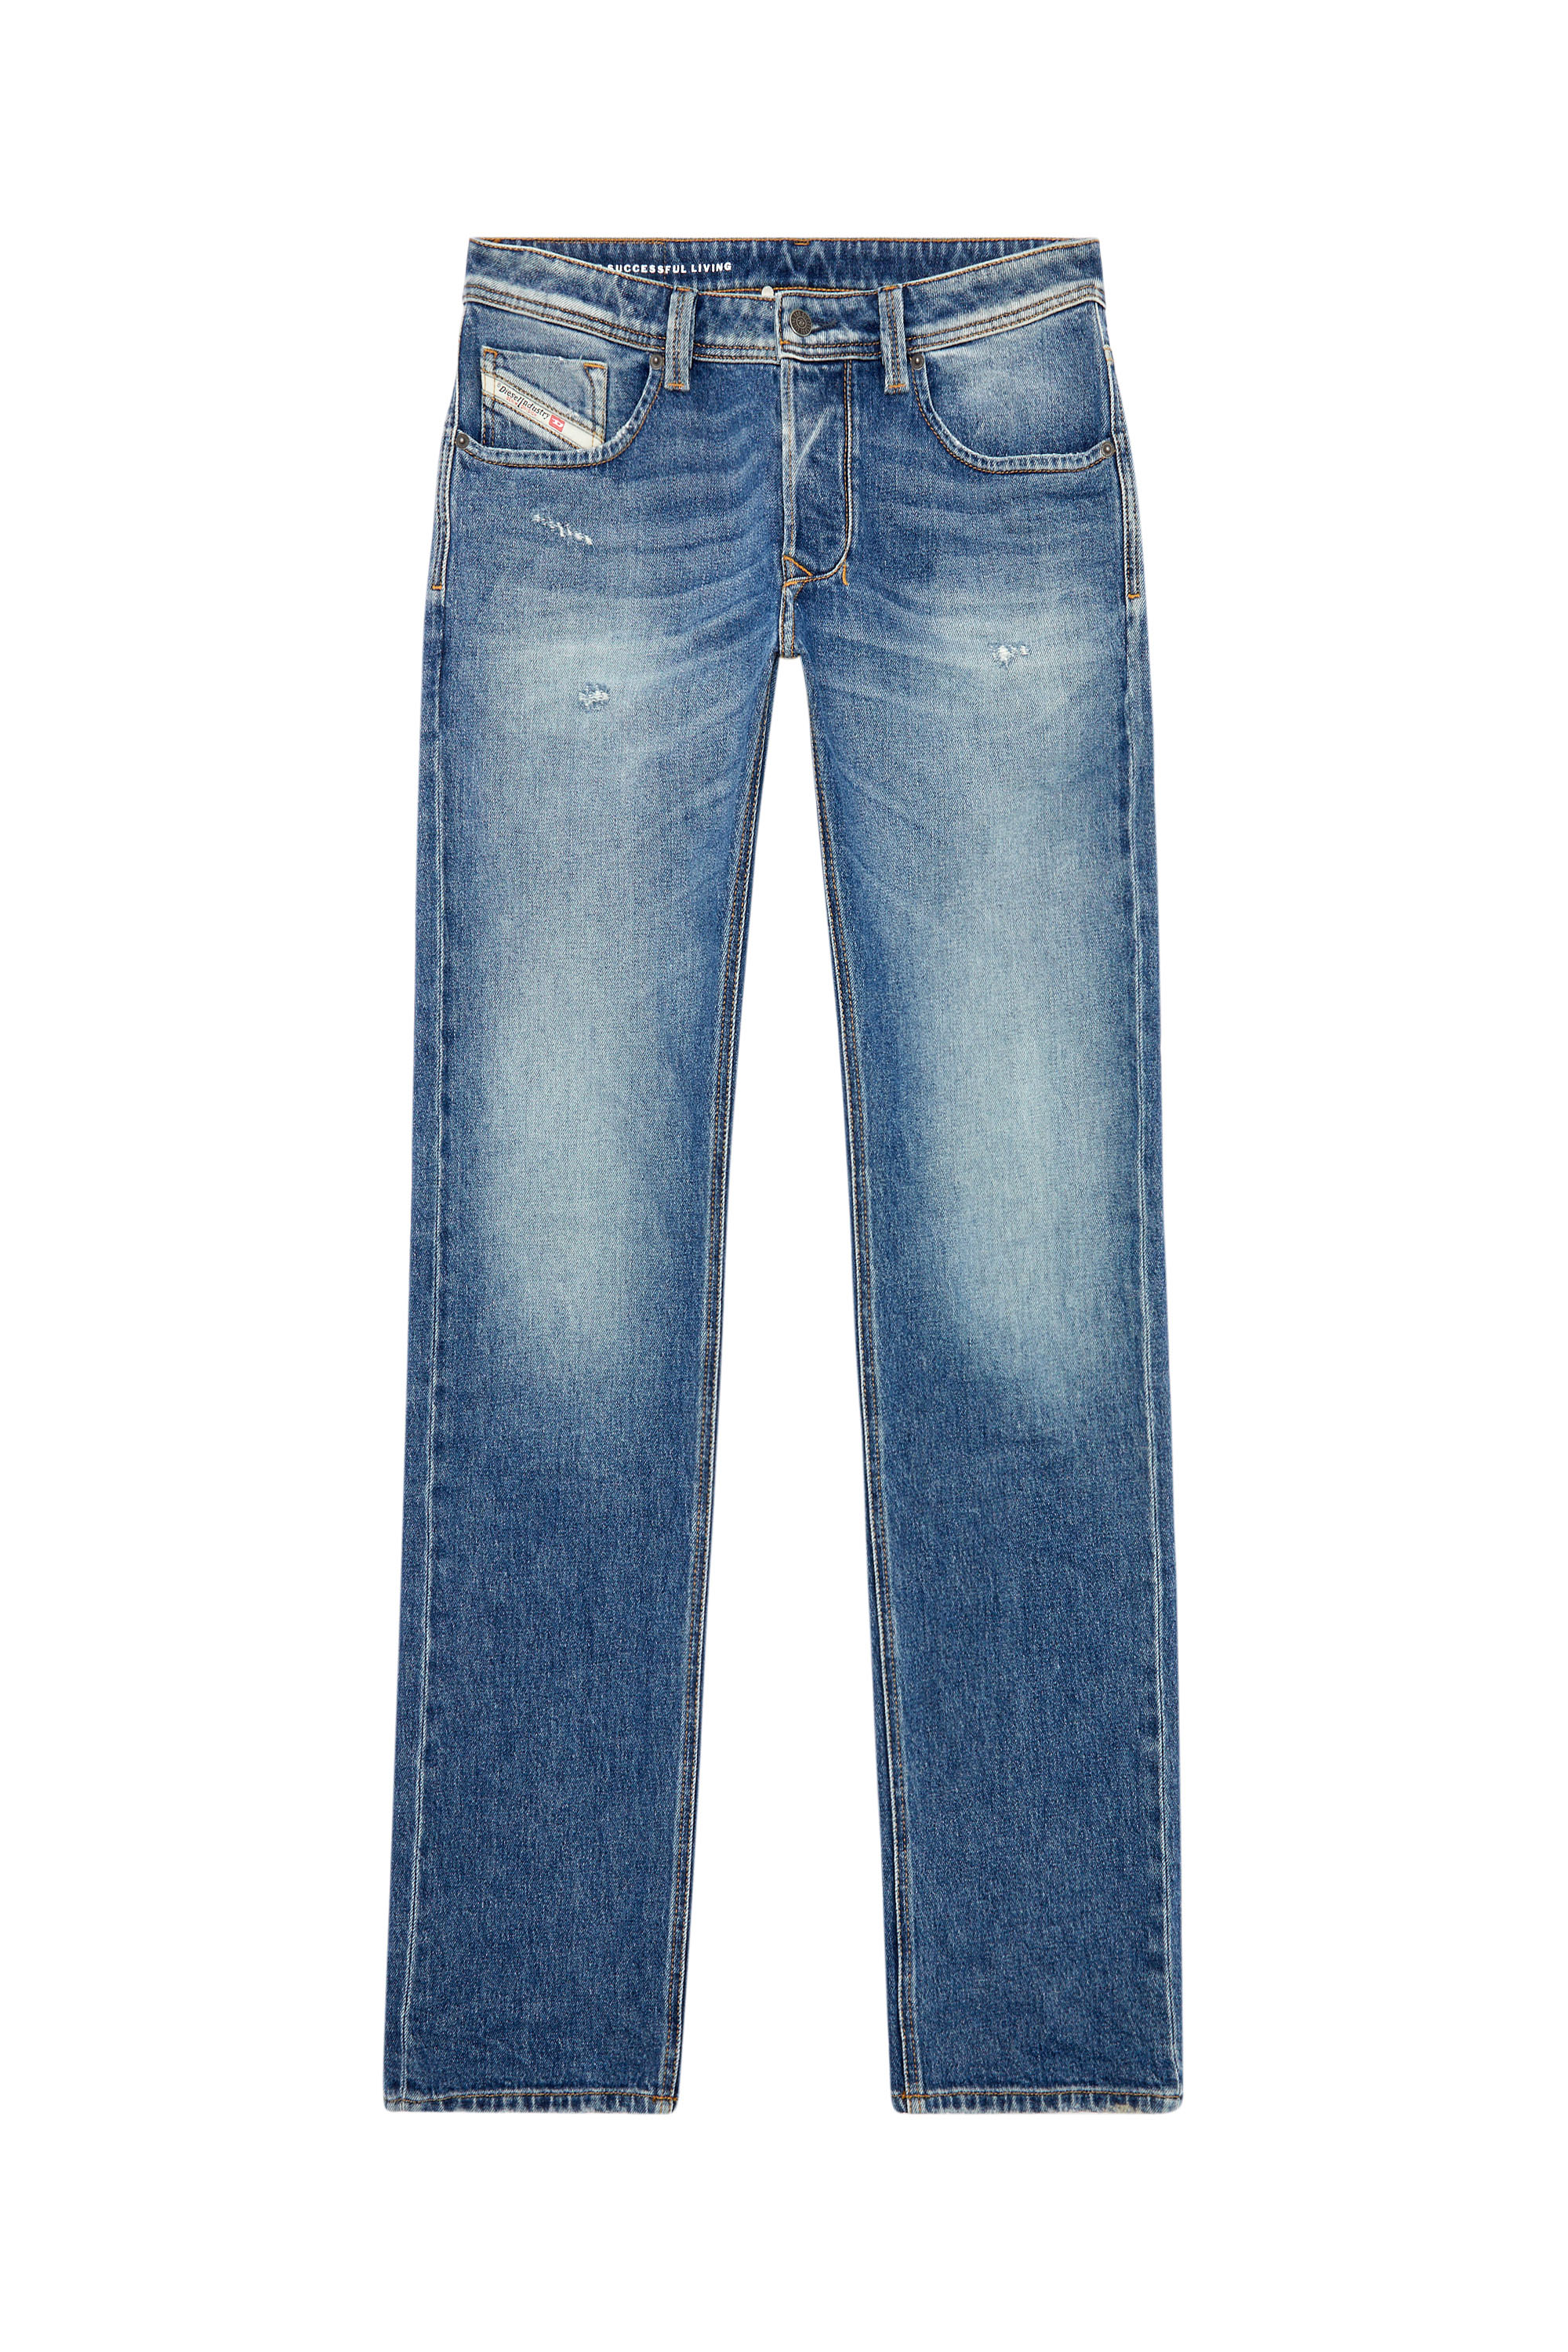 Diesel - Straight Jeans 1985 Larkee 09I16, Medium blue - Image 6